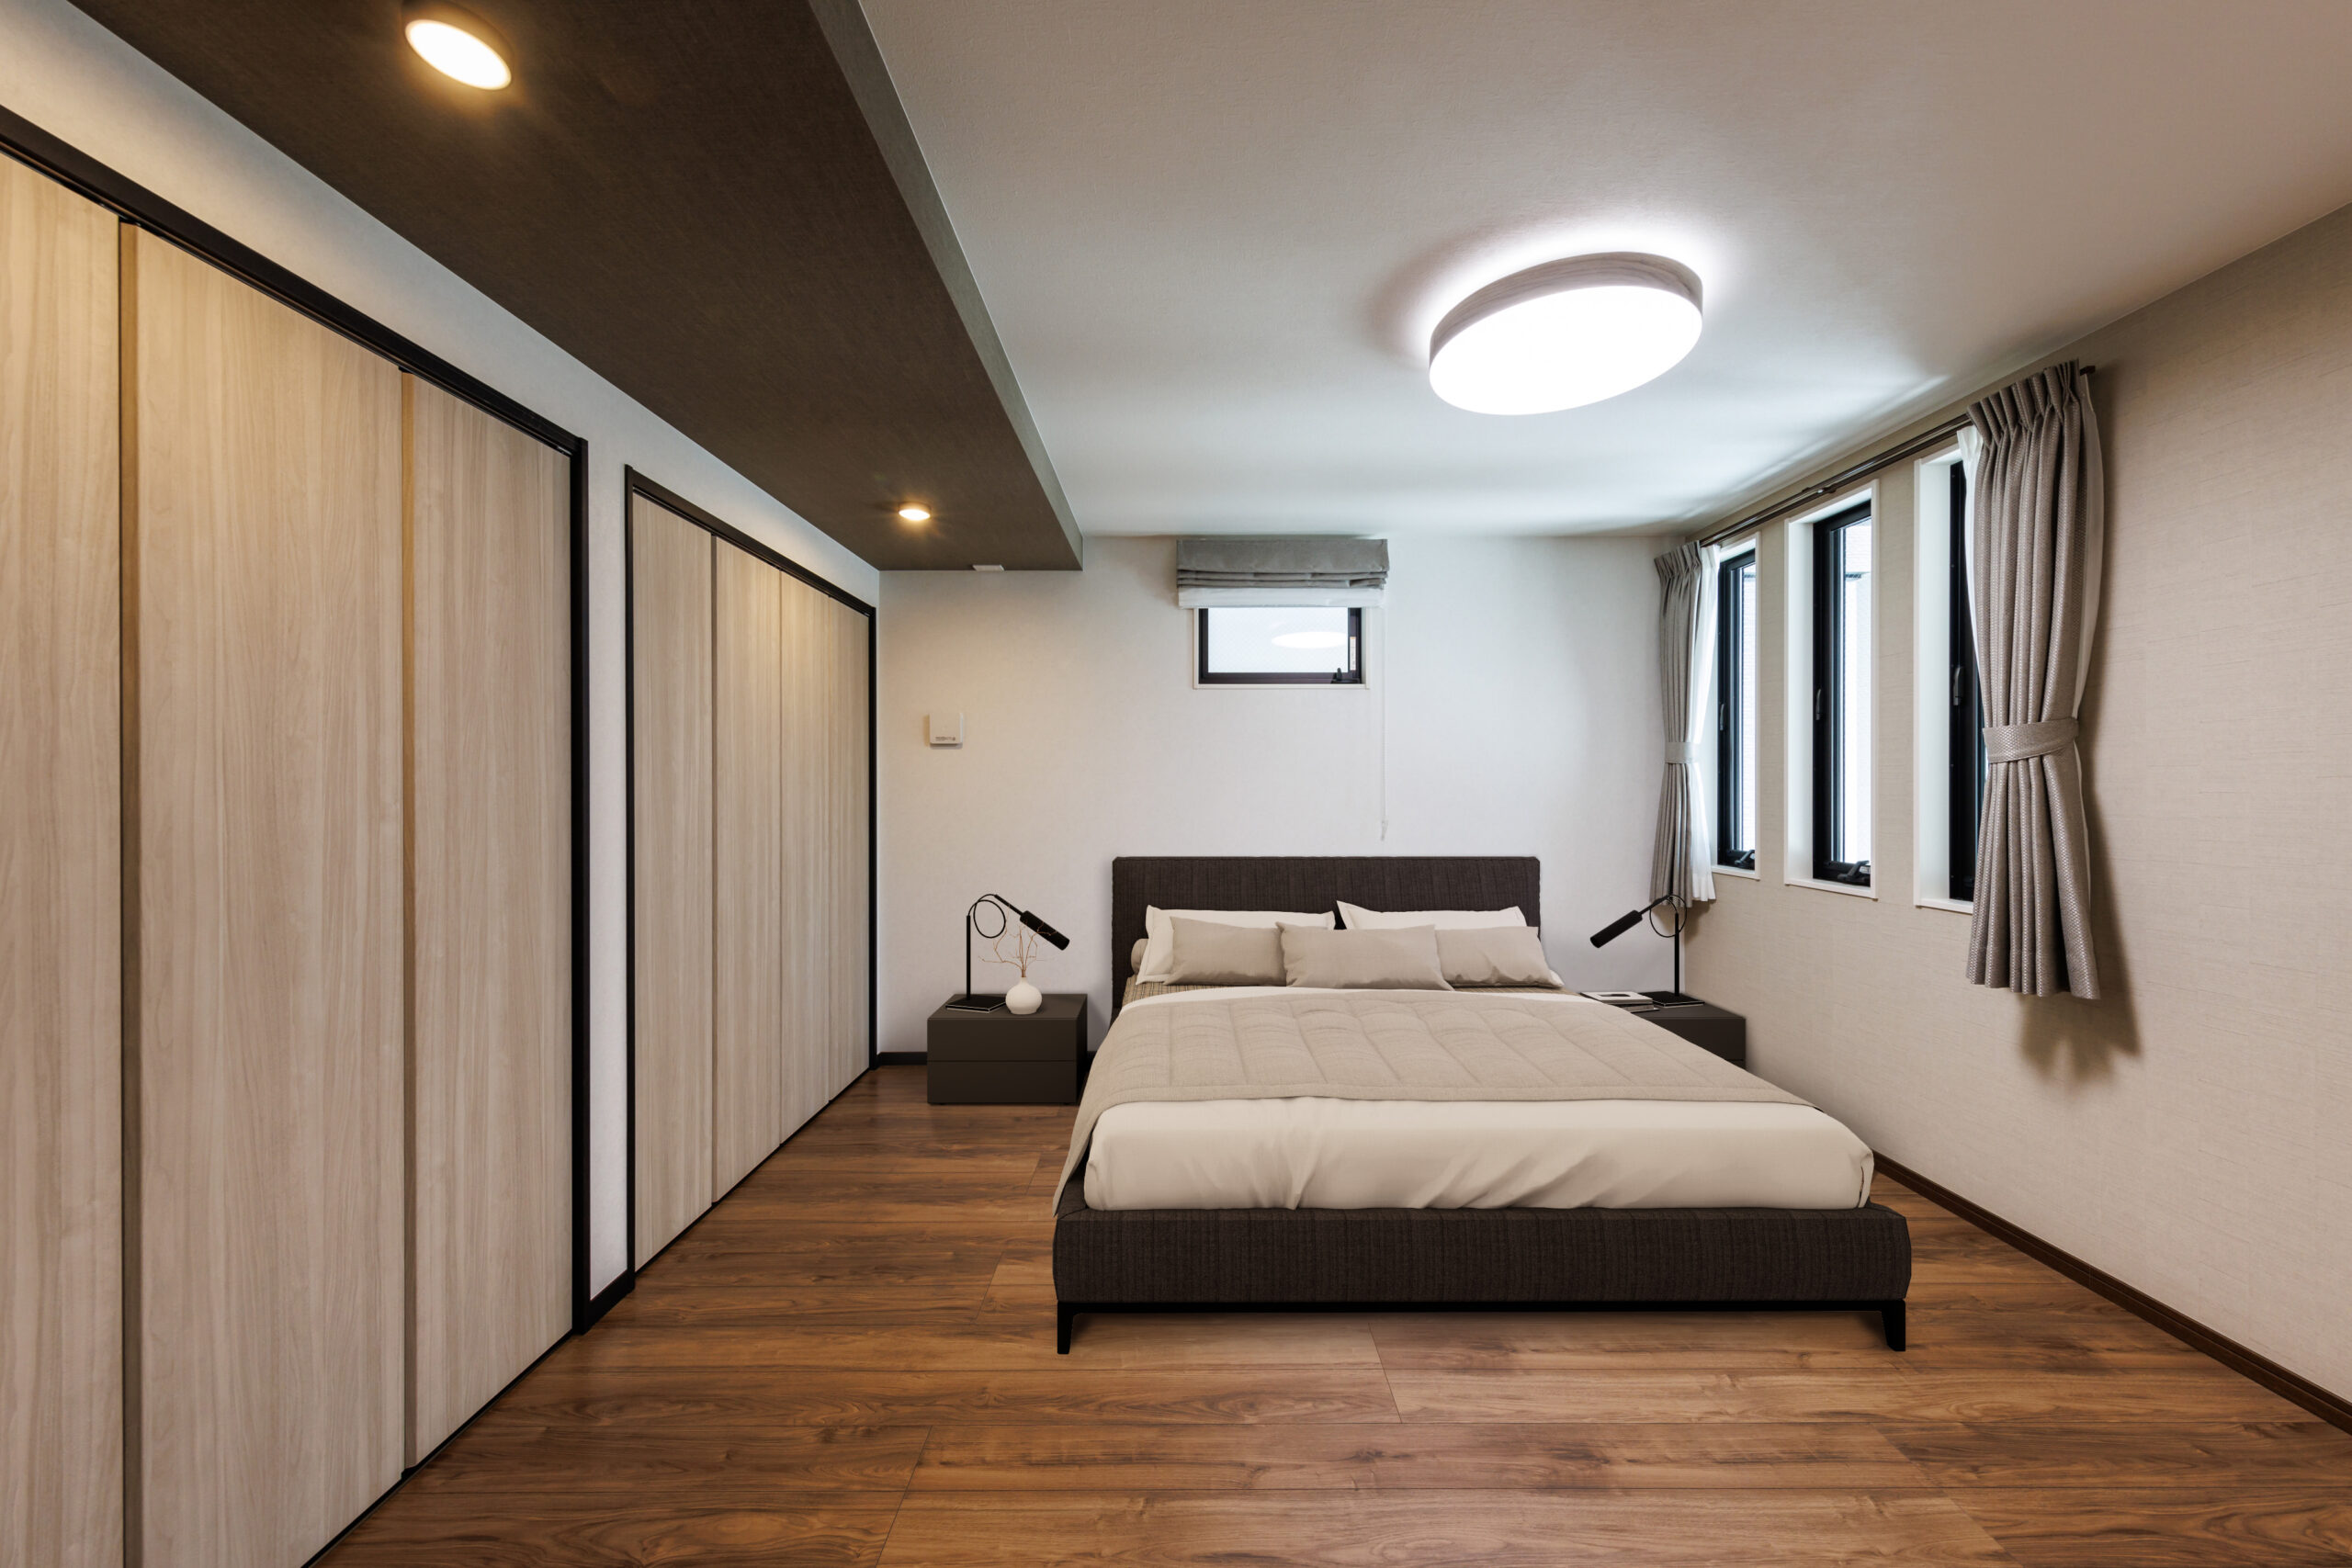 T-4／主寝室は木の風合いが温かみのある優しい雰囲気。明るい陽差しとともに、柔らかく空間を彩ります。